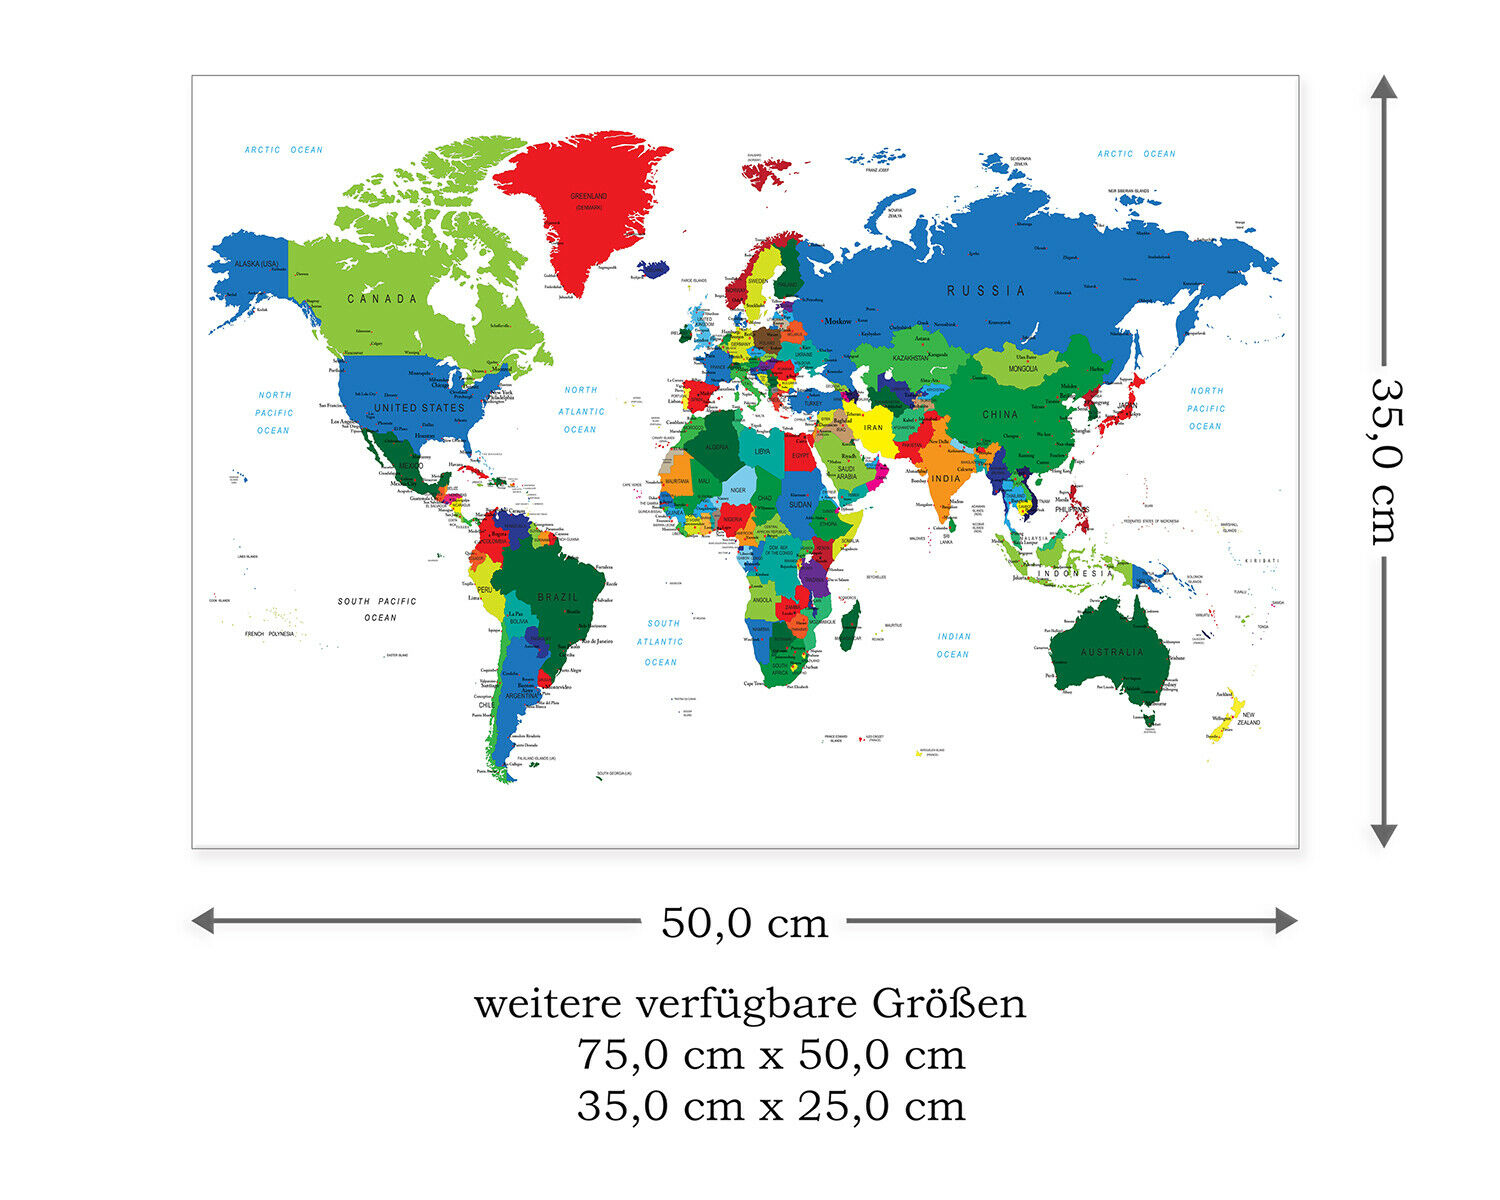 Postereck Leinwand 0666 - Politische Weltkarte, Laender innen Weltkarte Kontinente Länder